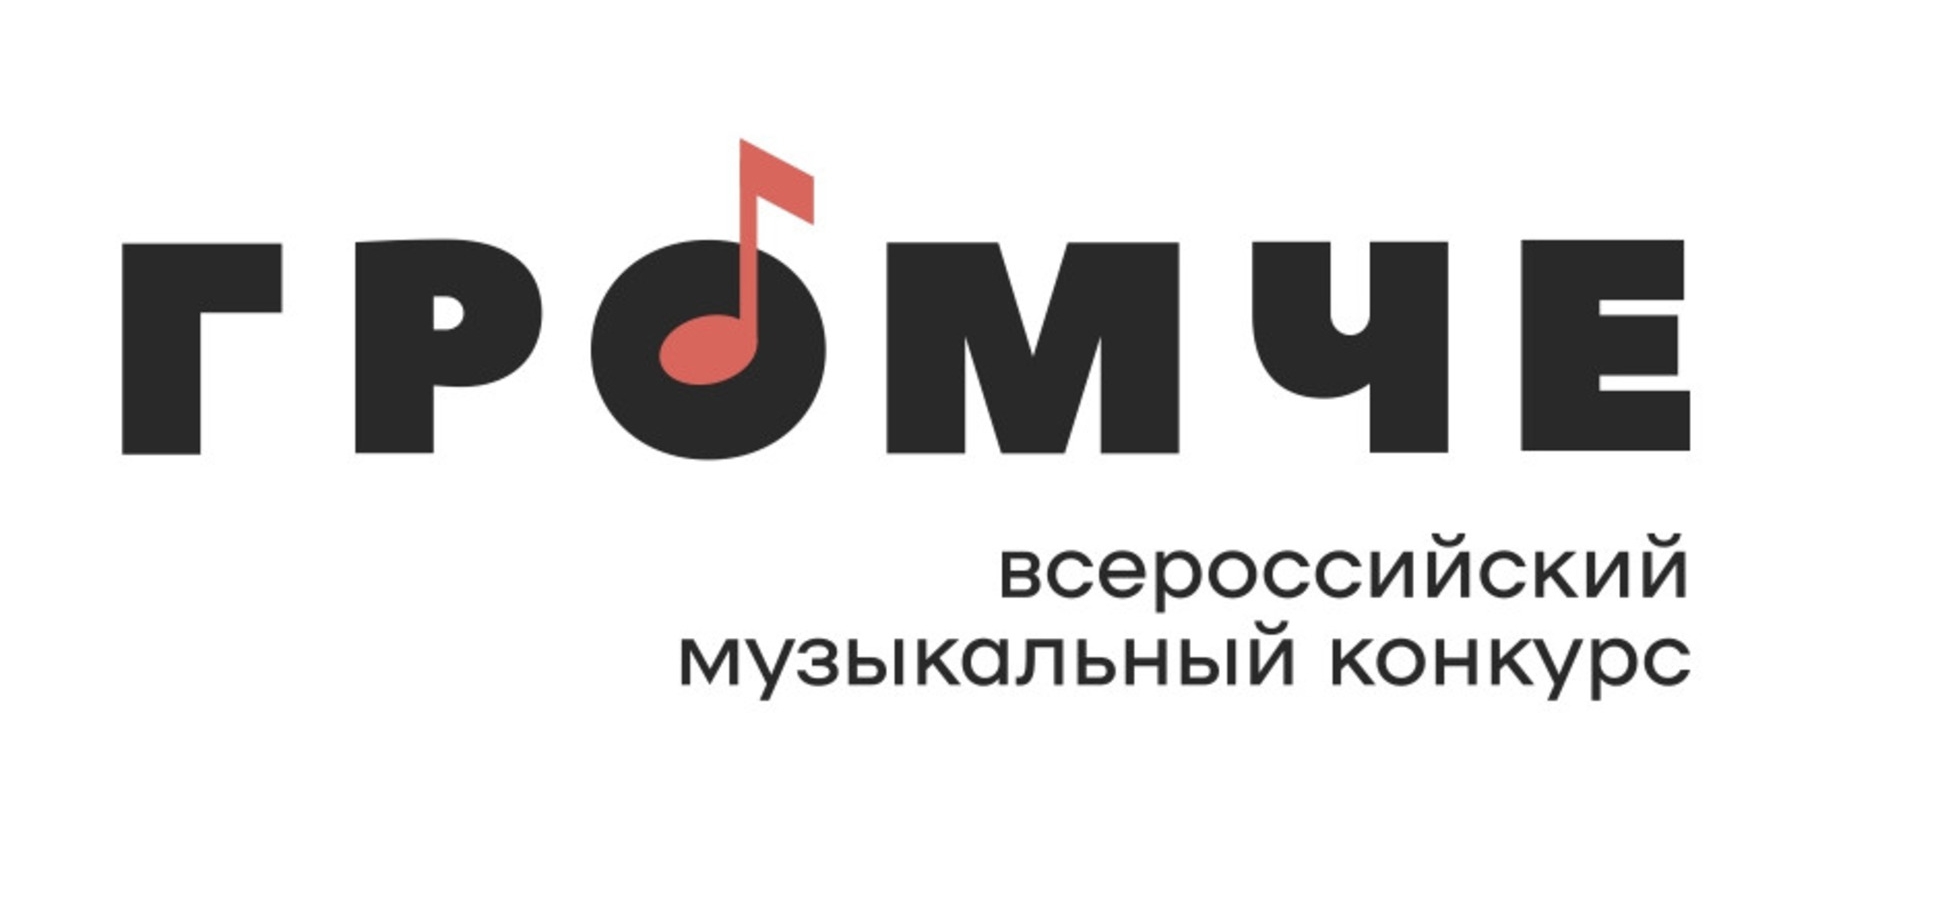 Всероссийский конкурс «Громче» ждет участников